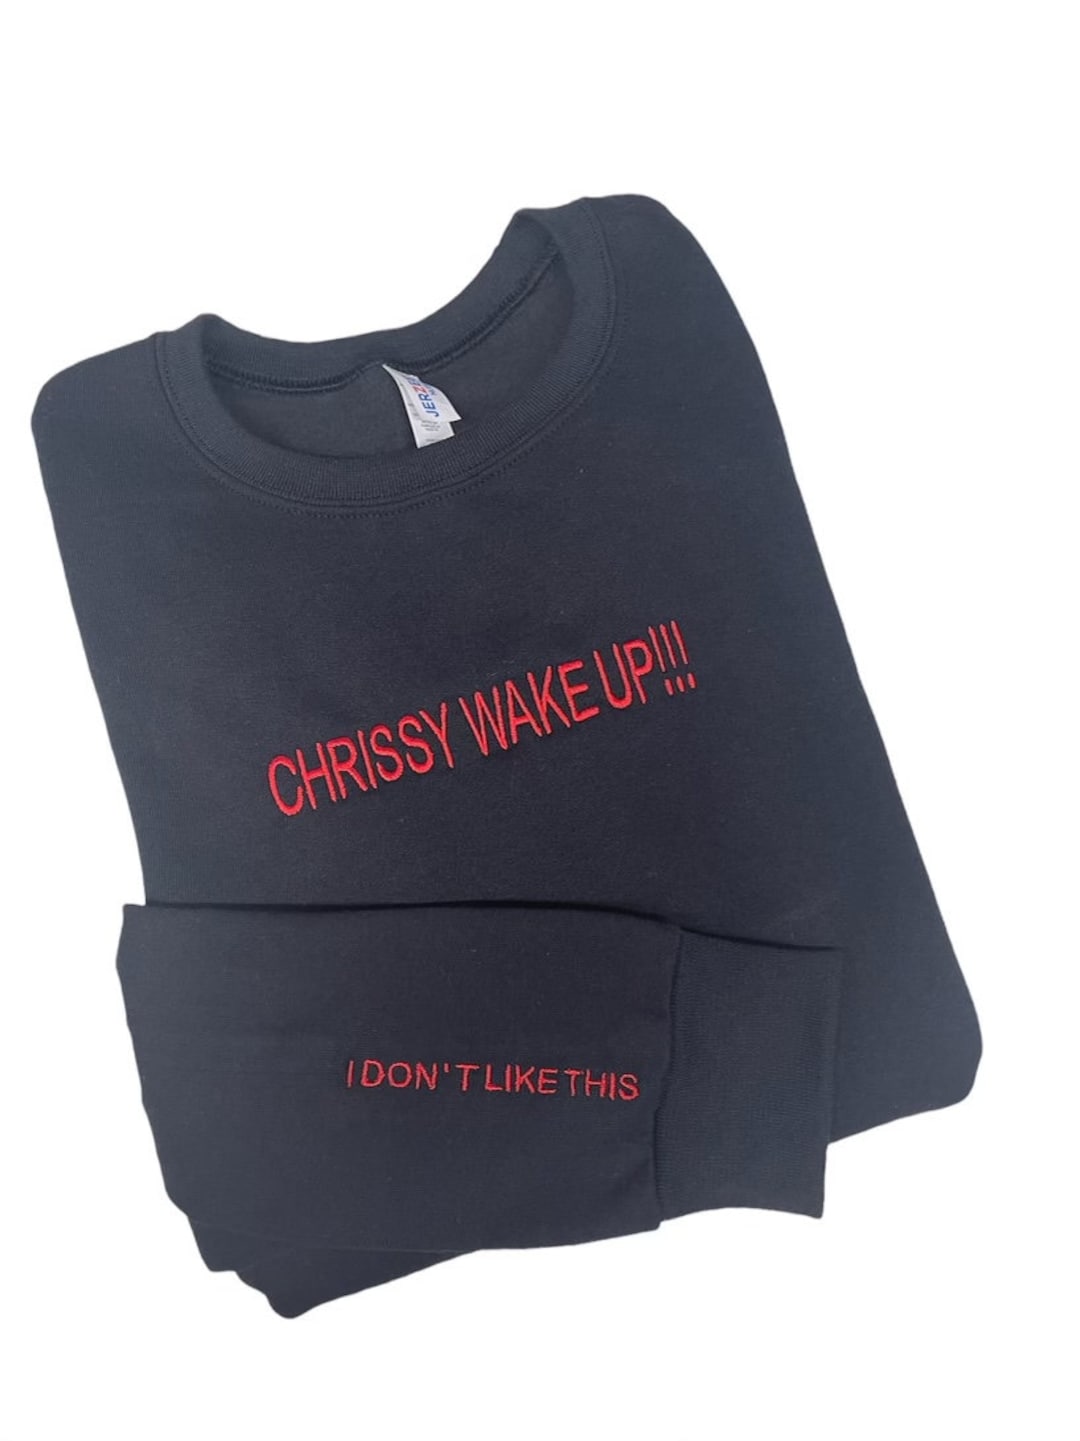 Chrissy Wake up I Dont Like This Embroidered Unisex Crewneck Sweatshirt ...